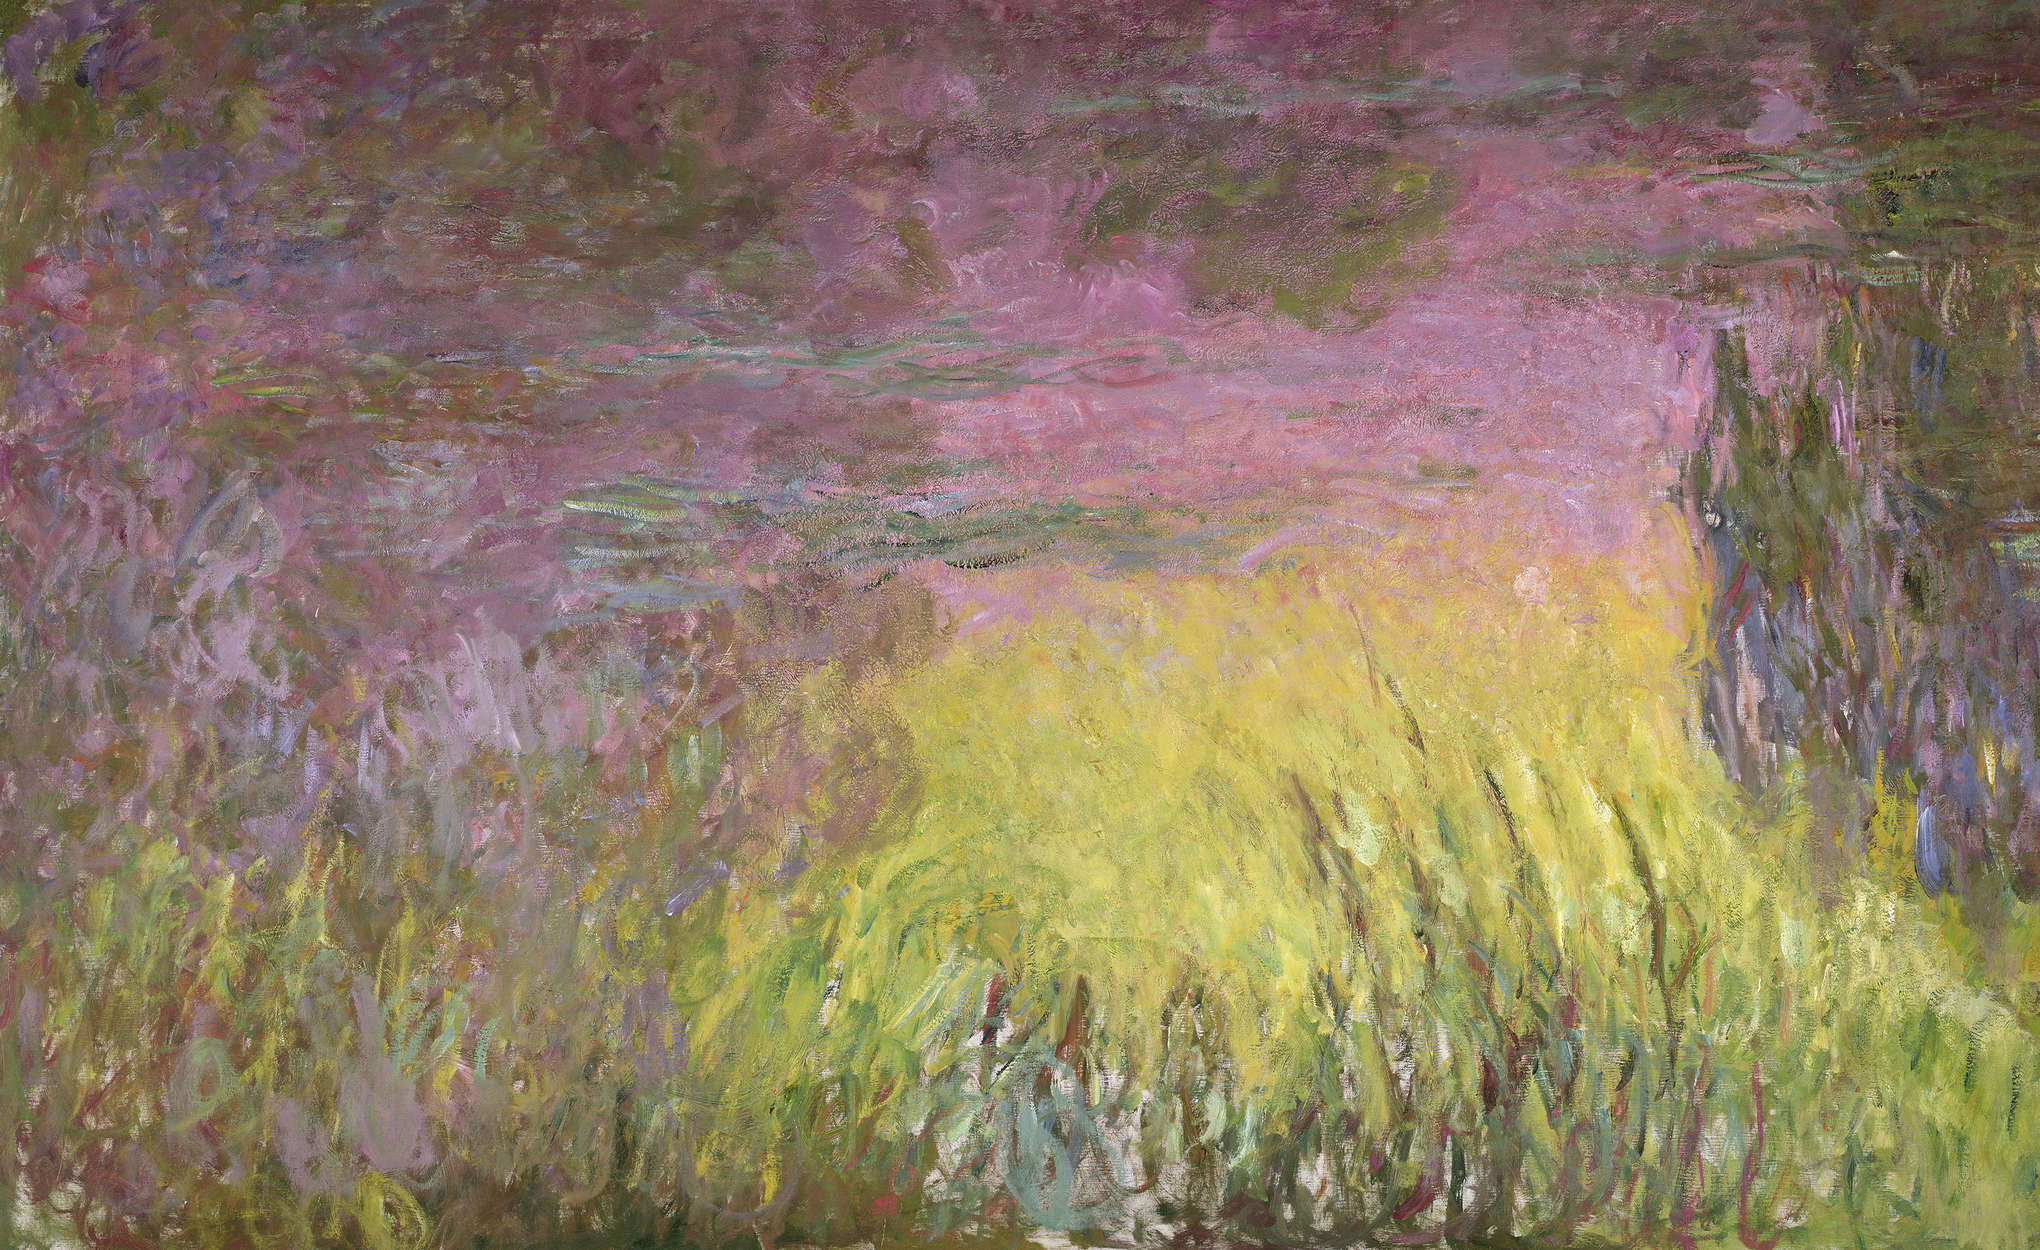             Mural "Nenúfares al atardecer" de Claude Monet
        